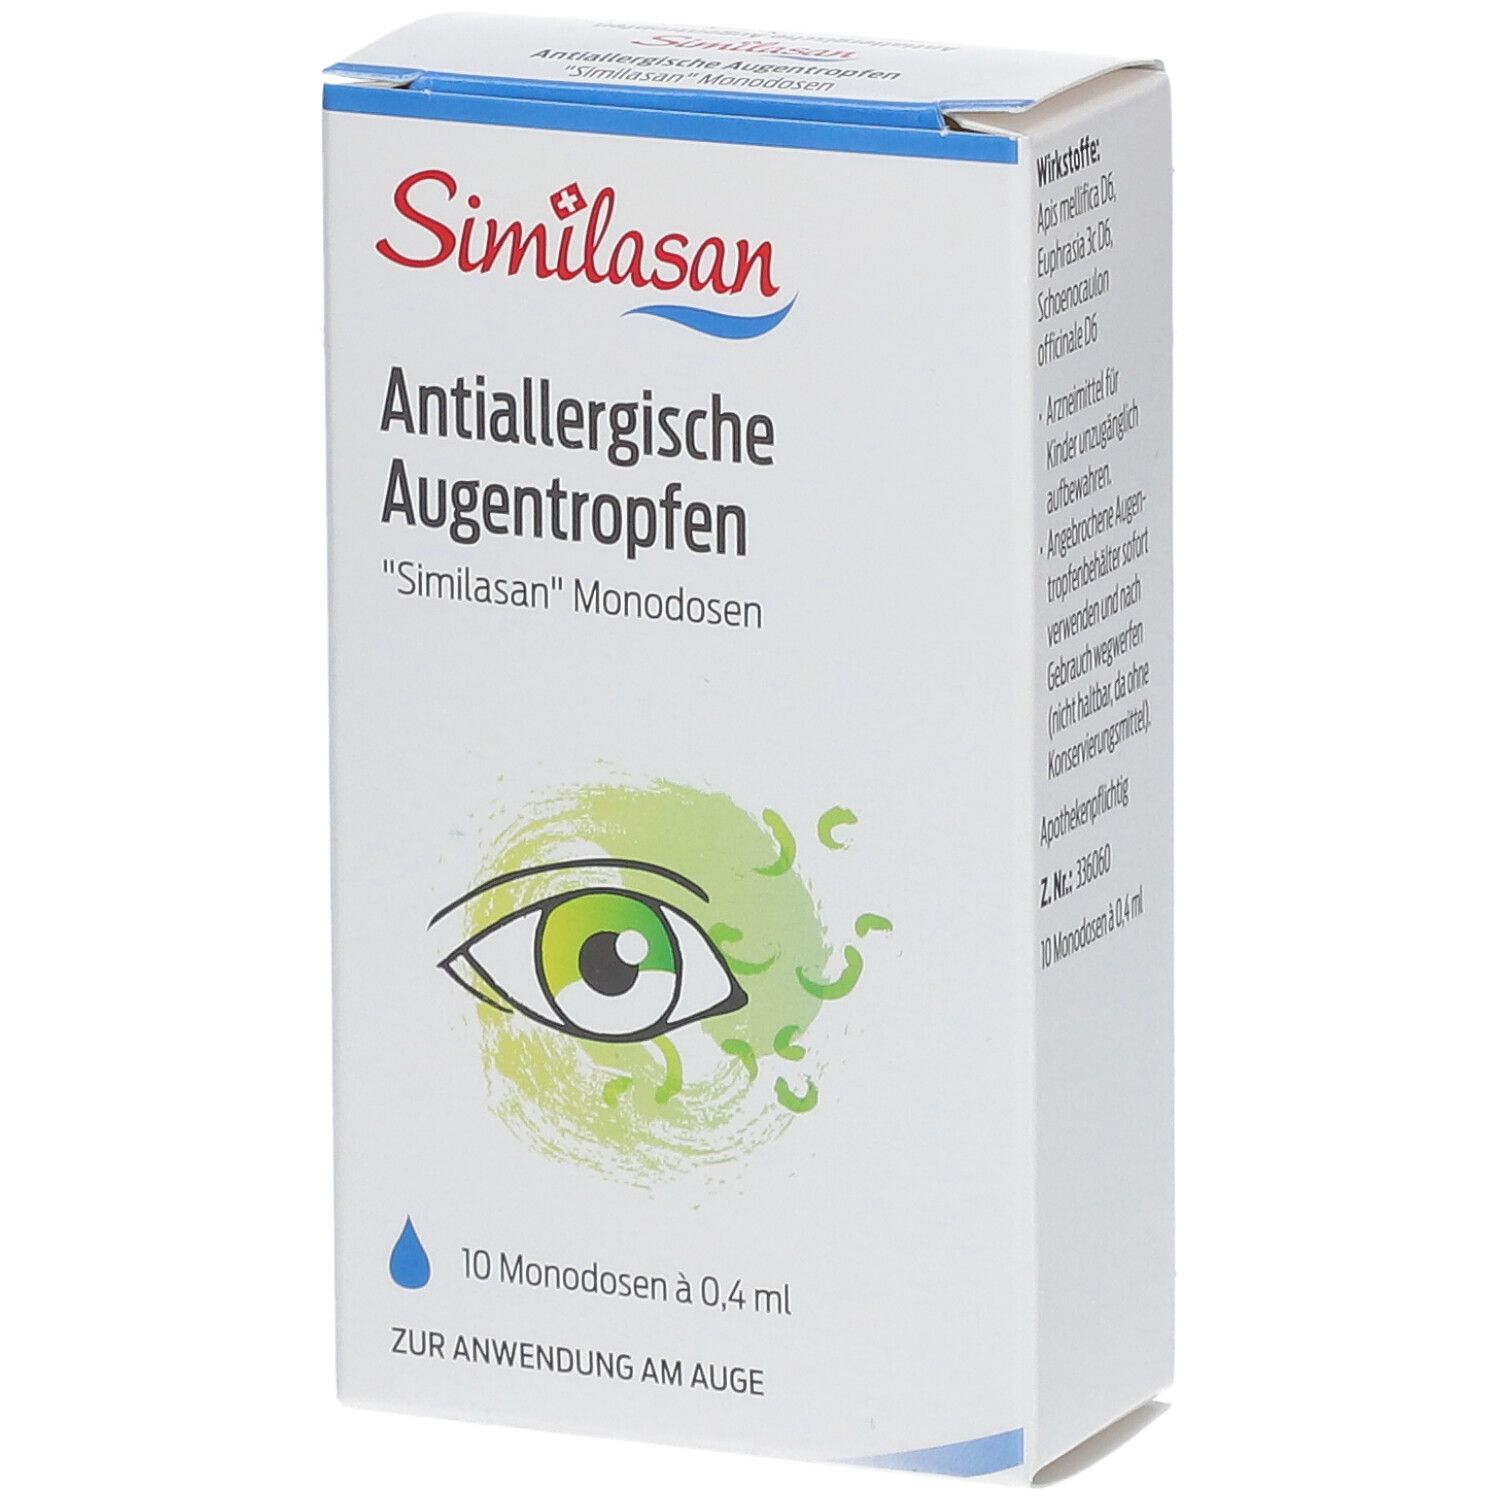 Antiallergische Augentropfen Similasan Monodosen - jetzt 10% sparen mit Code similasan10